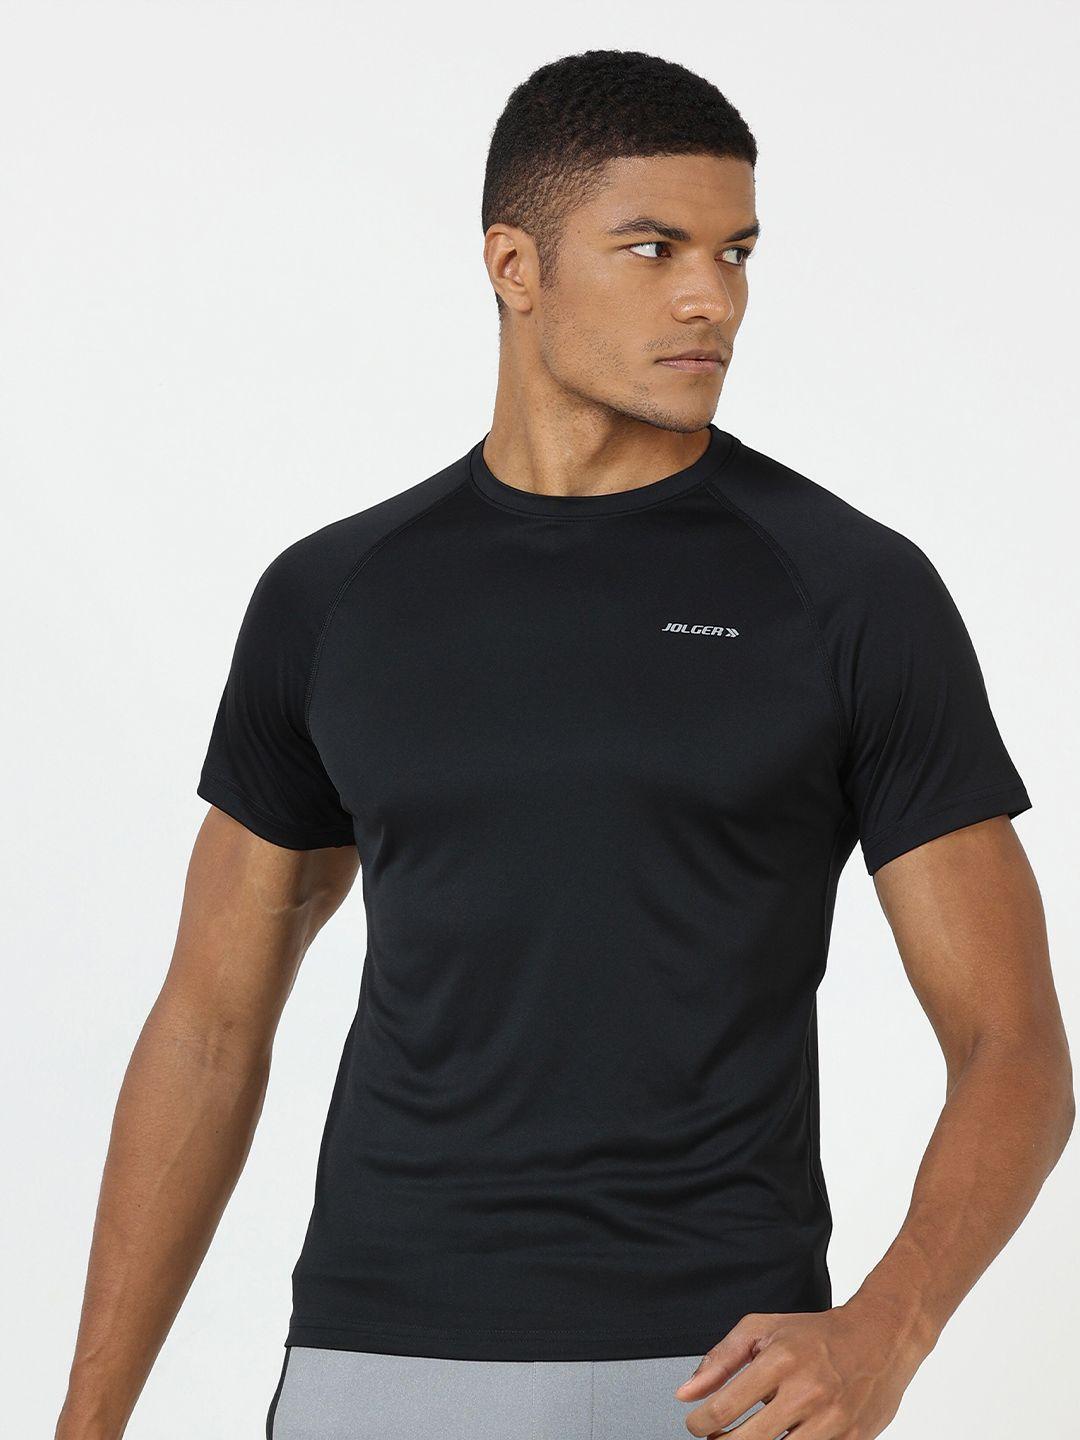 jolger slim fit raglan sleeves rapid-dry t-shirt